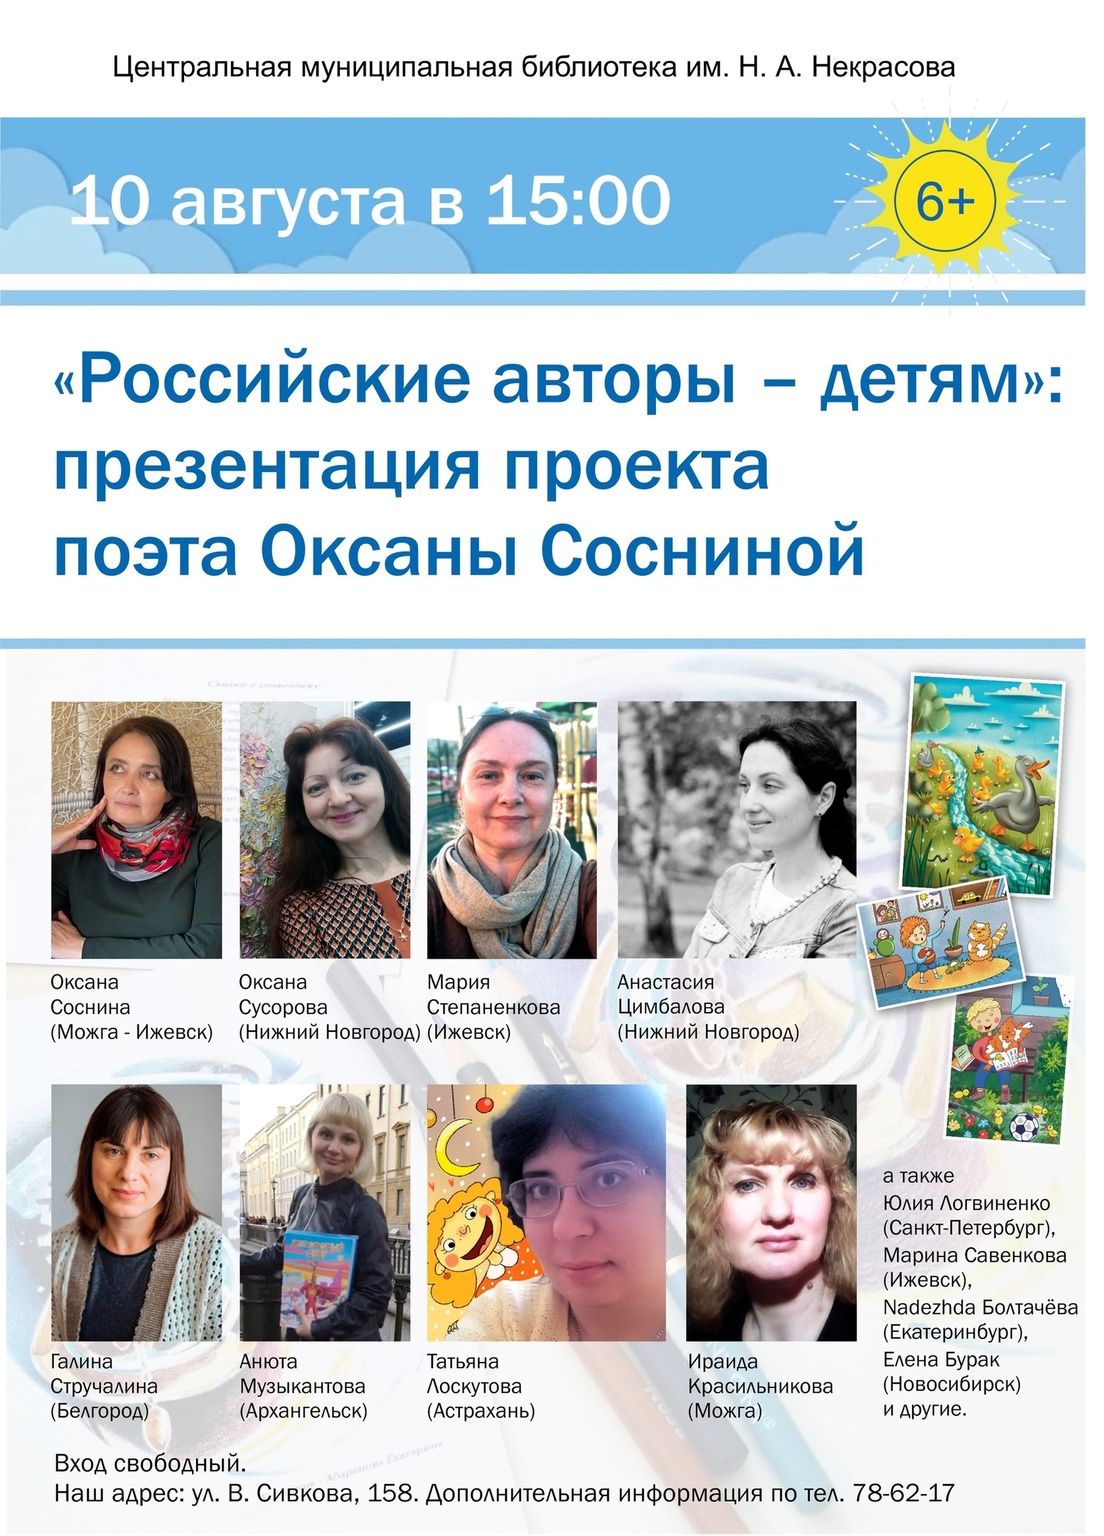 Презентация проекта «Российские авторы — детям»